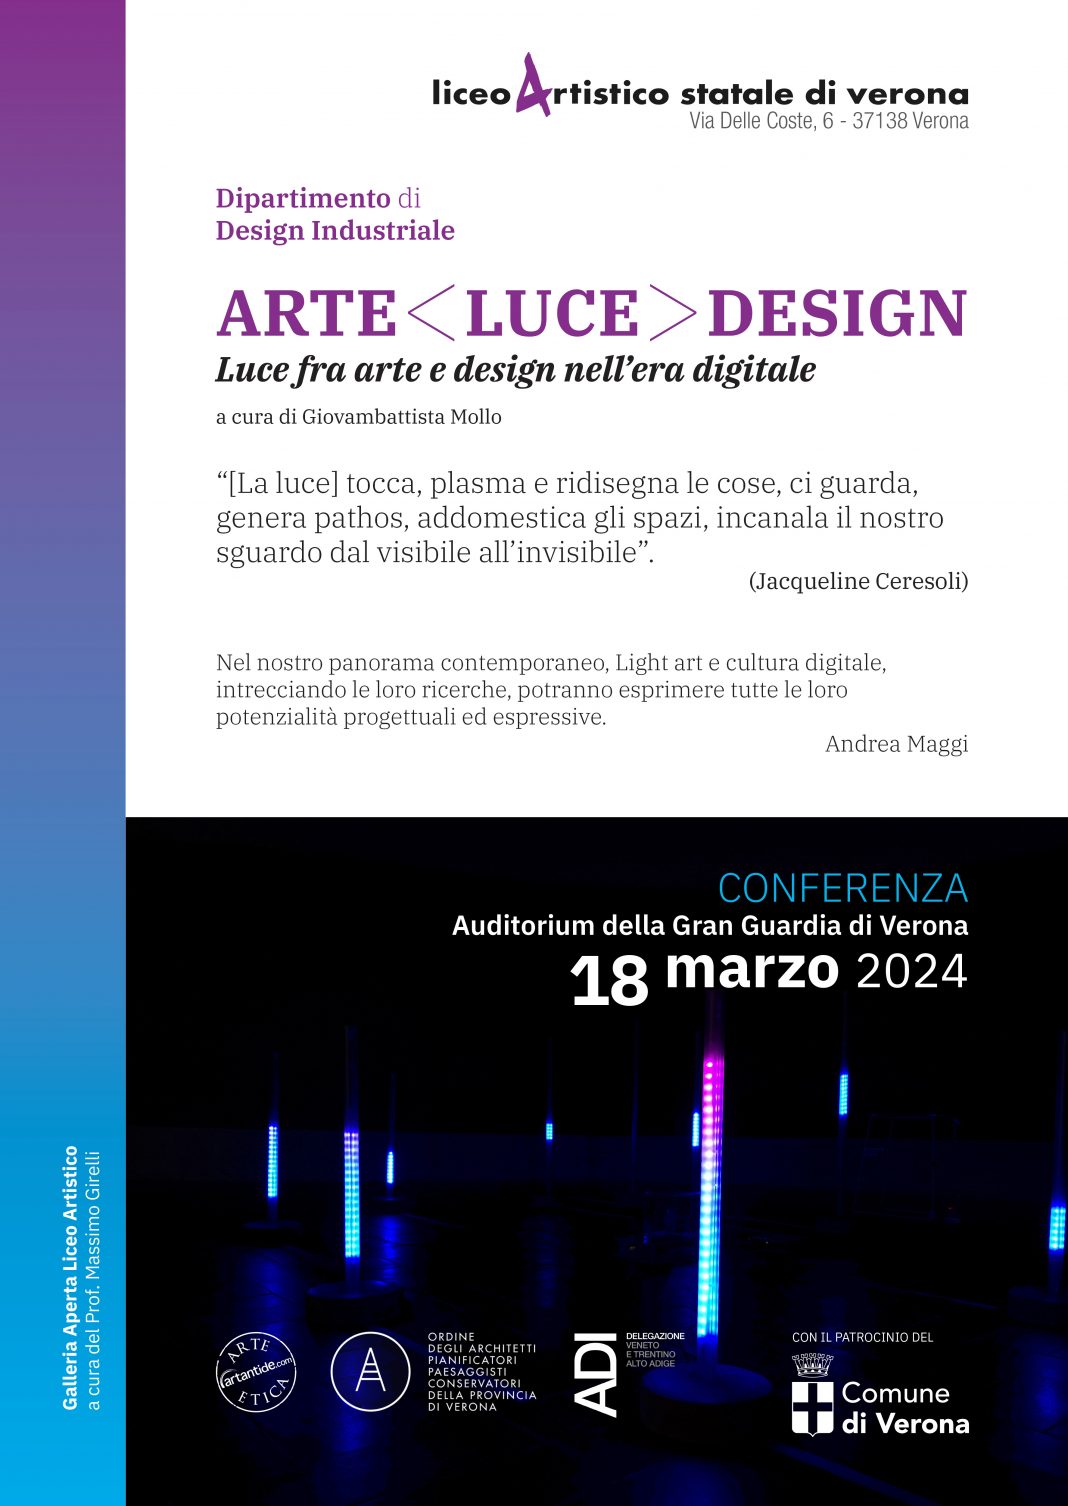 ARTE  DESIGN- Luce fra arte e design nell’era digitalehttps://www.exibart.com/repository/media/formidable/11/img/58a/ARTE-LUCE-DESIGN_web-locandina-exibart-1068x1506.jpg